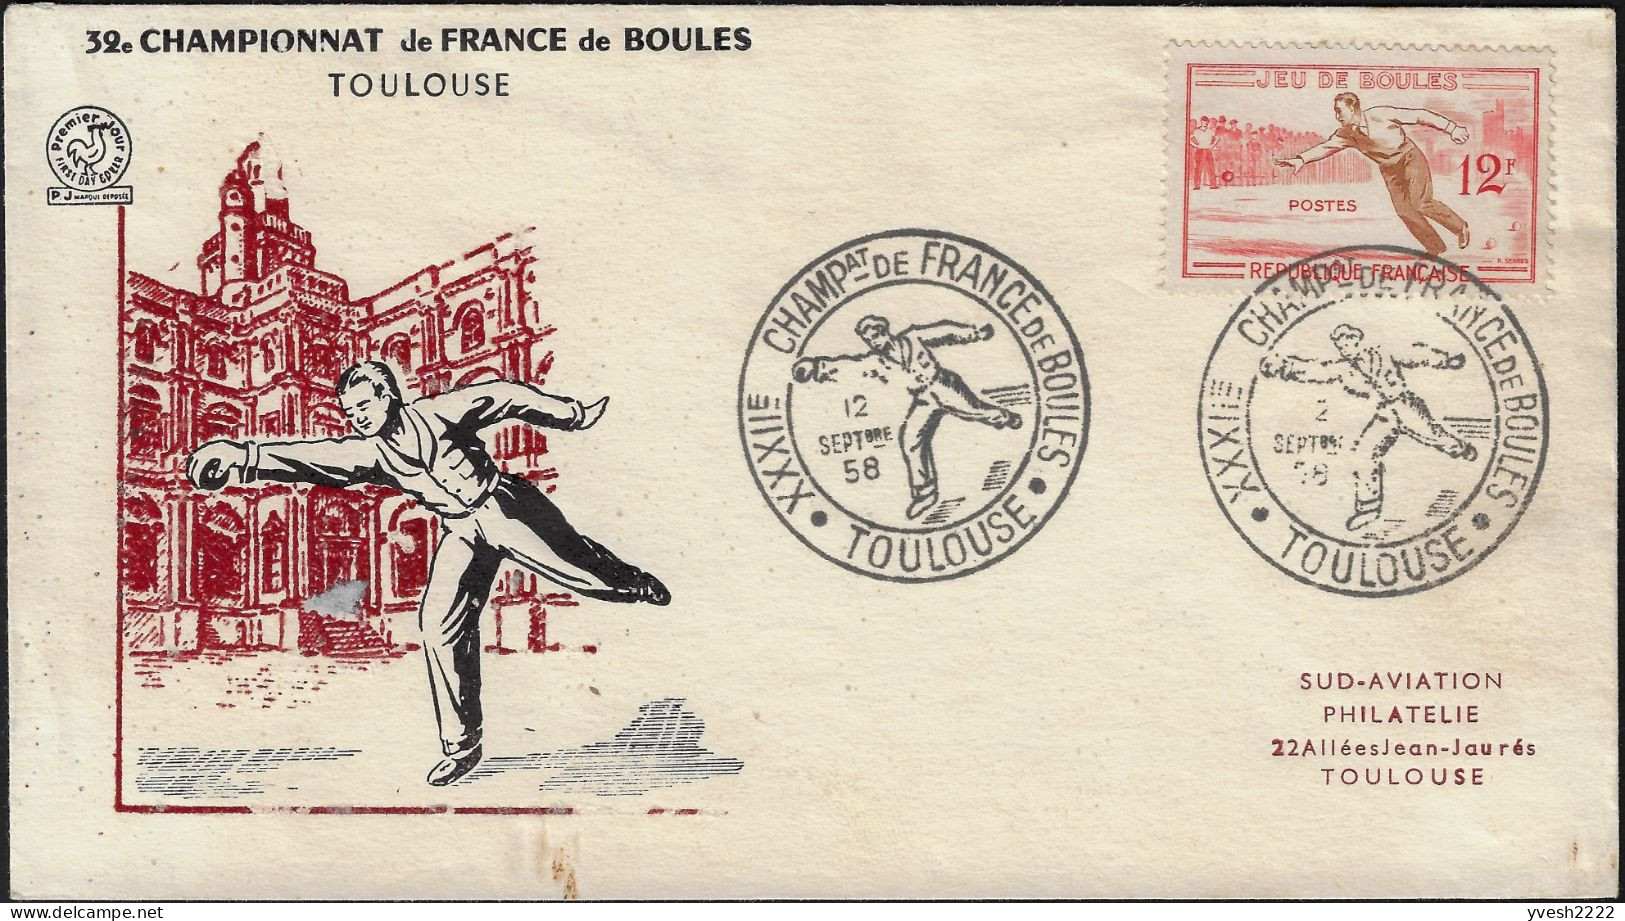 France 1958 Y&T 1161. Enveloppe, Jeu De Boules. Championnat De France, Toulouse - Pétanque